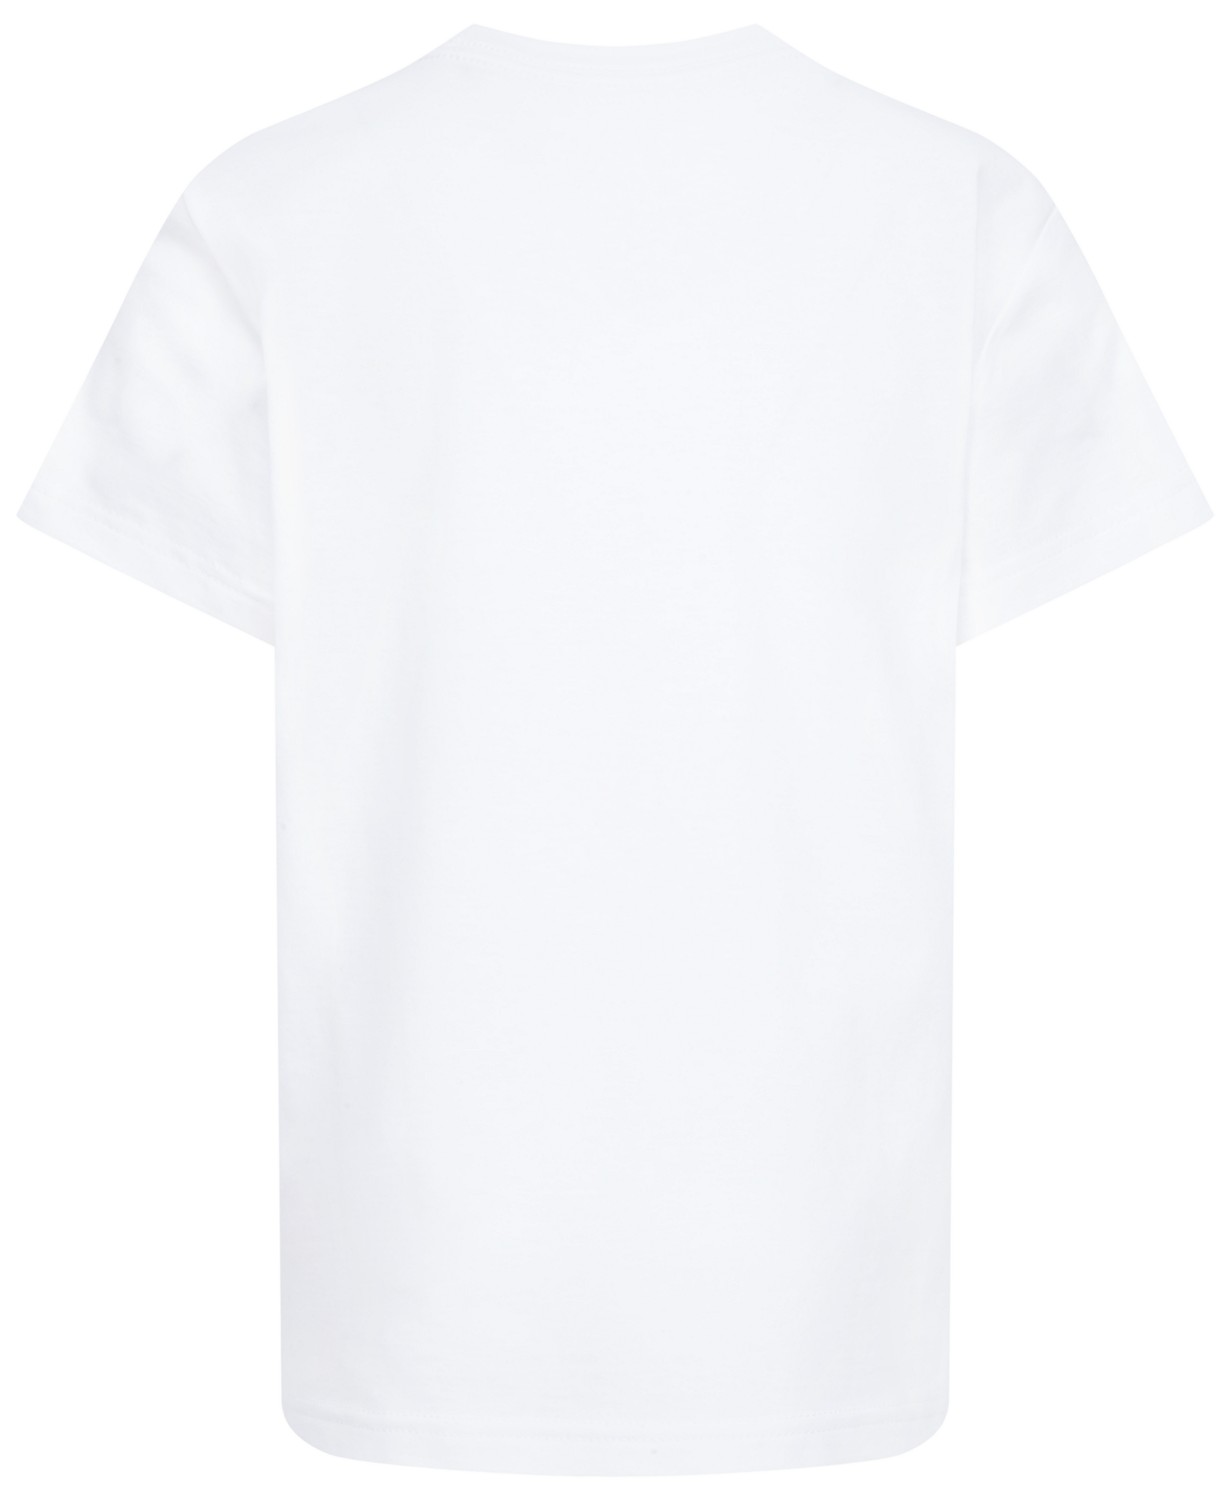 조던 Toddler Boys Jumpman 3D Short Sleeve T-shirt